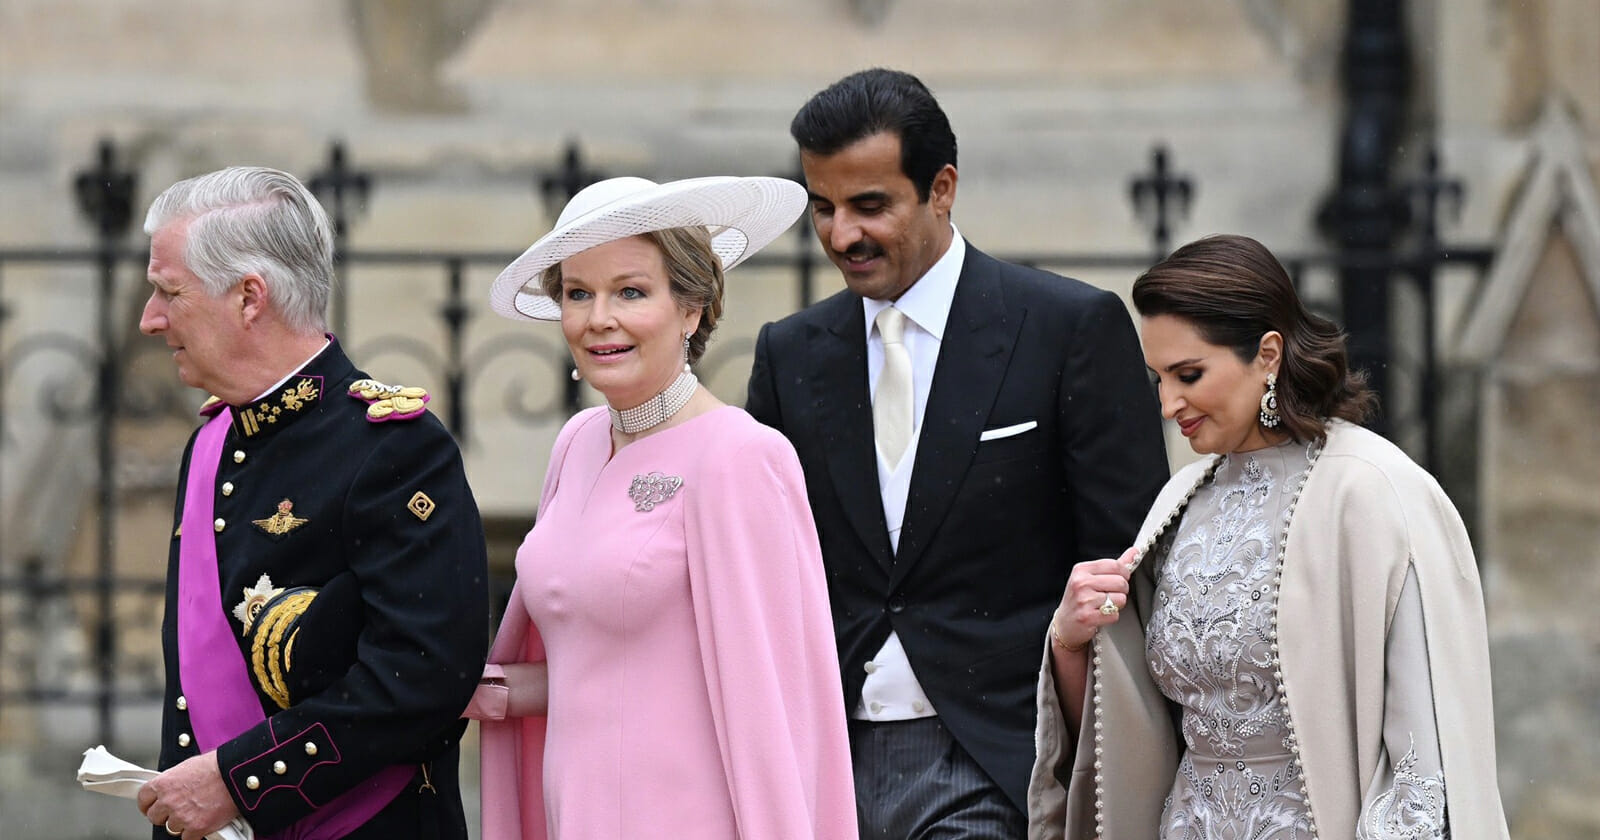 زوجة أمير قطر في حفل تتويج الملك تشارلز watanserb.com